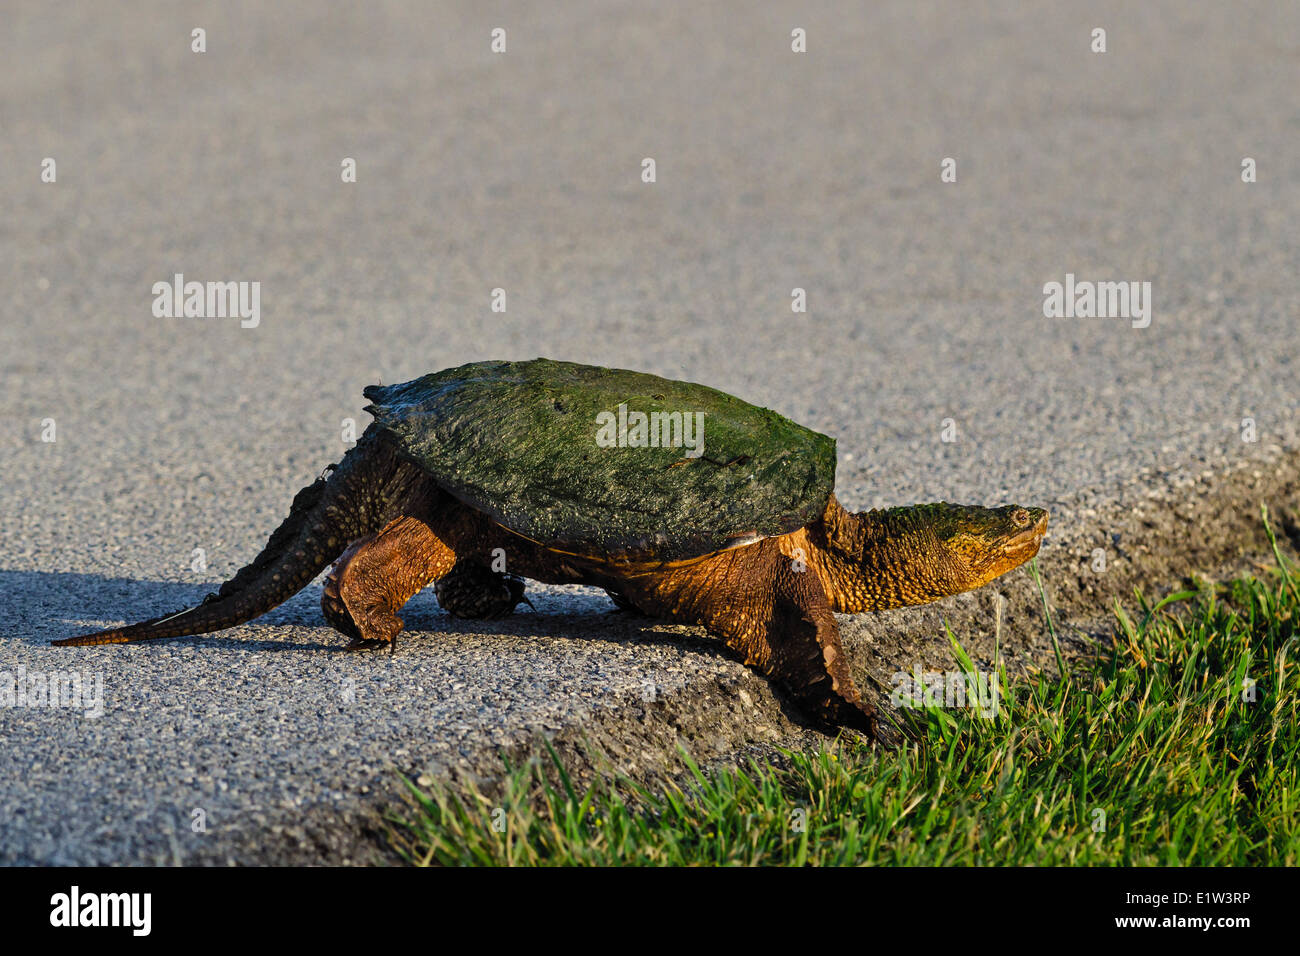 Snapping comune tartaruga (Chelydra serpentina) attraversando road, la molla, il Lago Erie litorale, Ohio, Stati Uniti d'America. Foto Stock